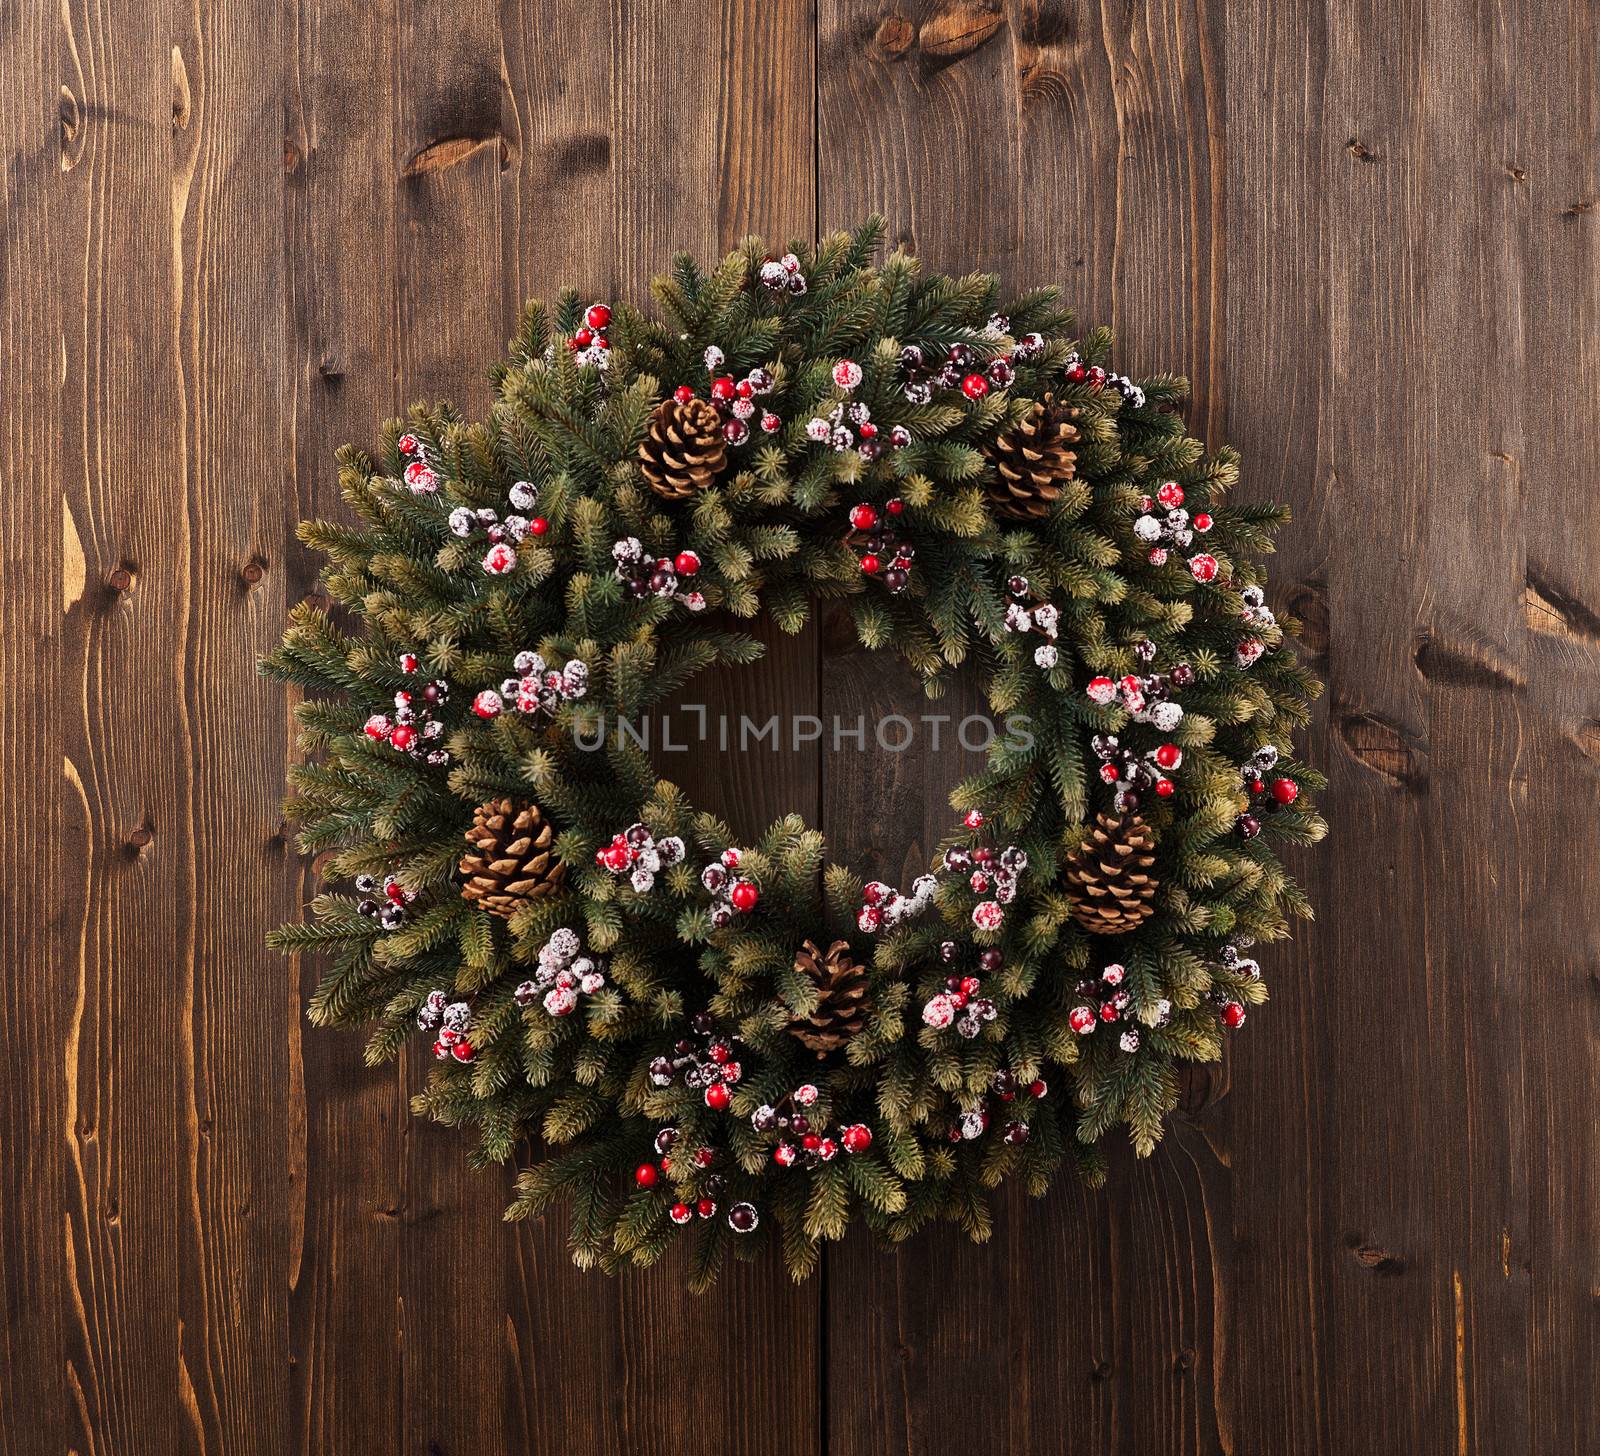 Advent Christmas wreath on wooden door decoration